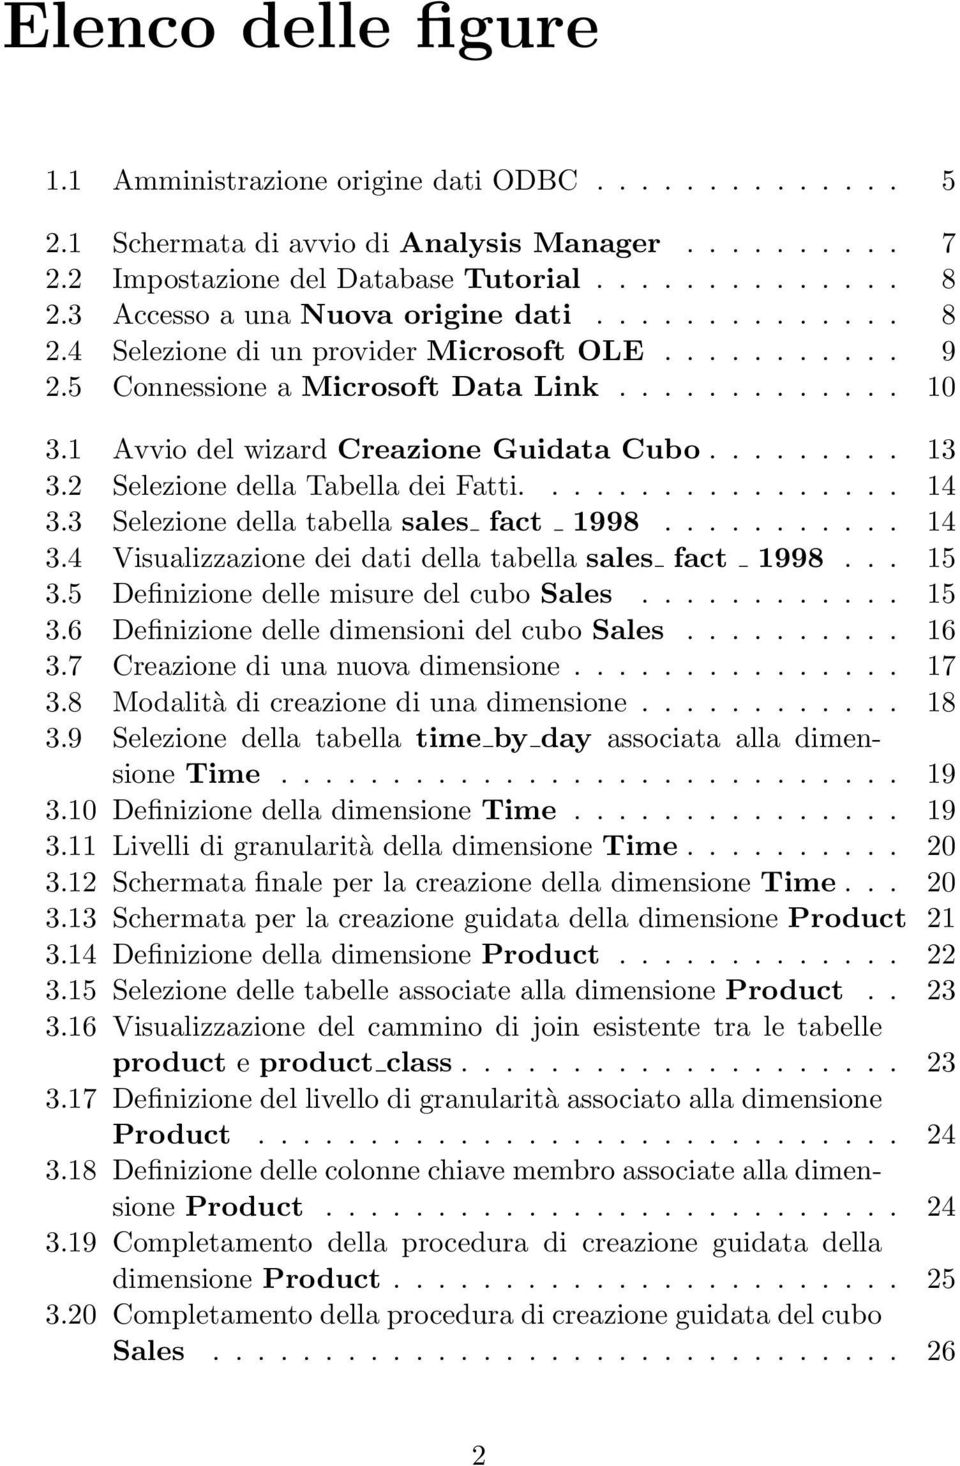 1 Avvio del wizard Creazione Guidata Cubo......... 13 3.2 Selezione della Tabella dei Fatti................. 14 3.3 Selezione della tabella sales fact 1998........... 14 3.4 Visualizzazione dei dati della tabella sales fact 1998.